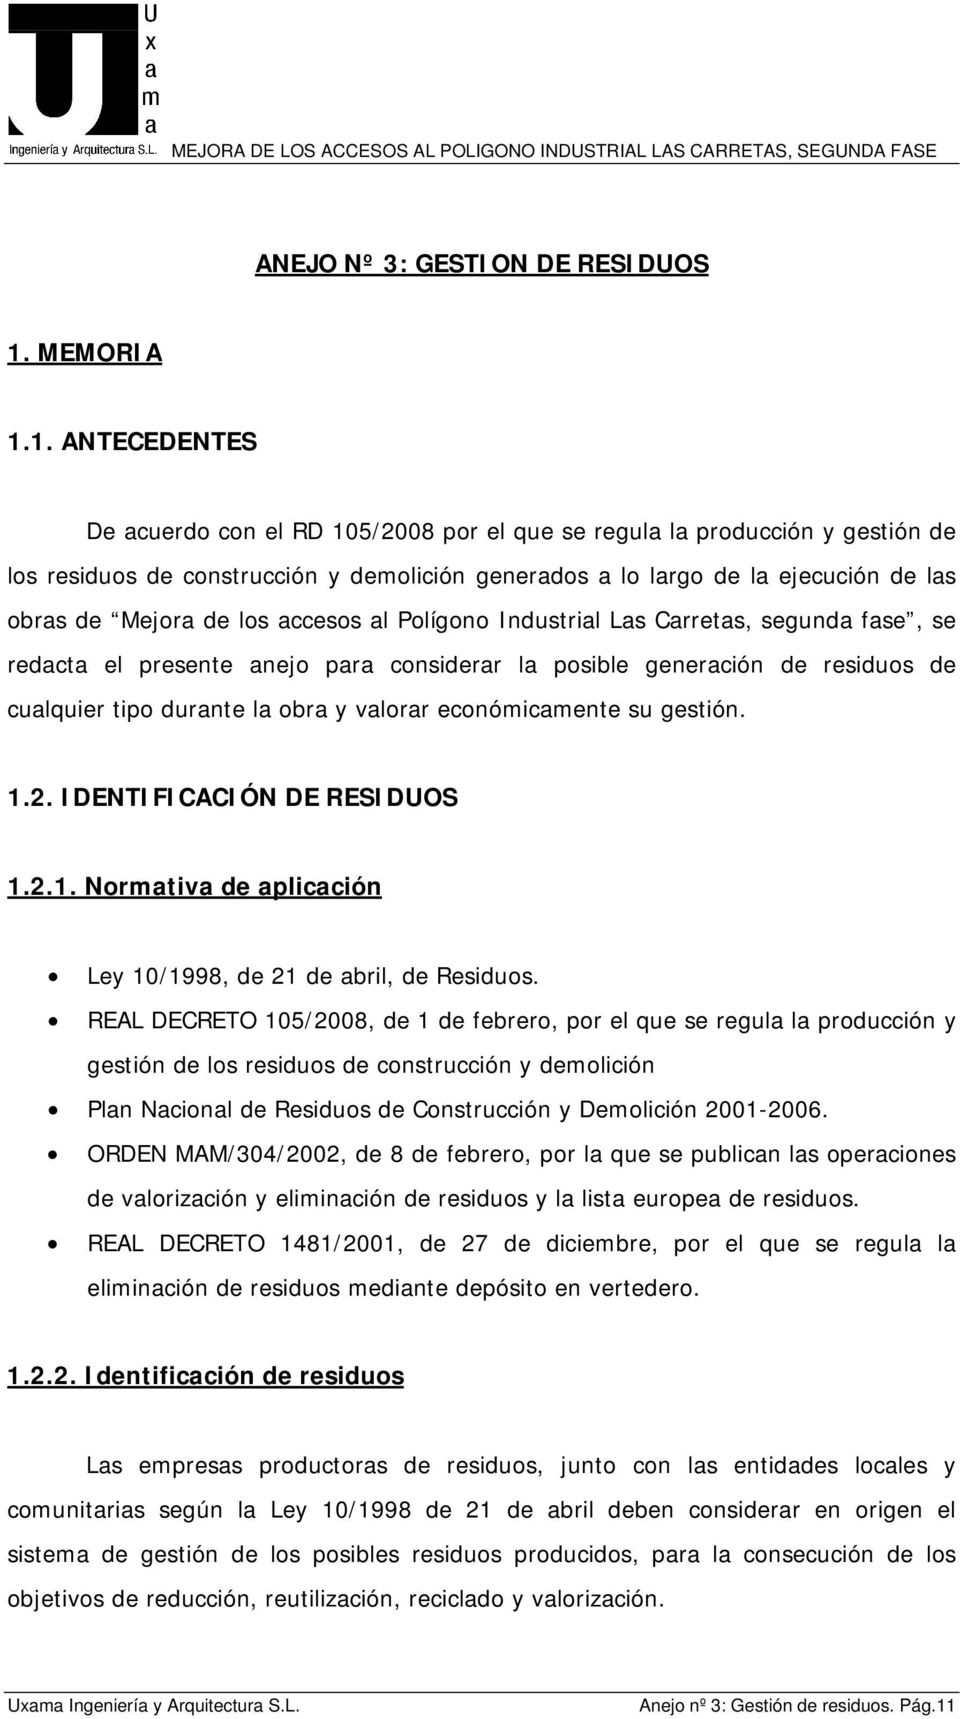 1. ANTECEDENTES De acuerdo con el RD 105/2008 por el que se regula la producción y gestión de los residuos de construcción y demolición generados a lo largo de la ejecución de las obras de Mejora de